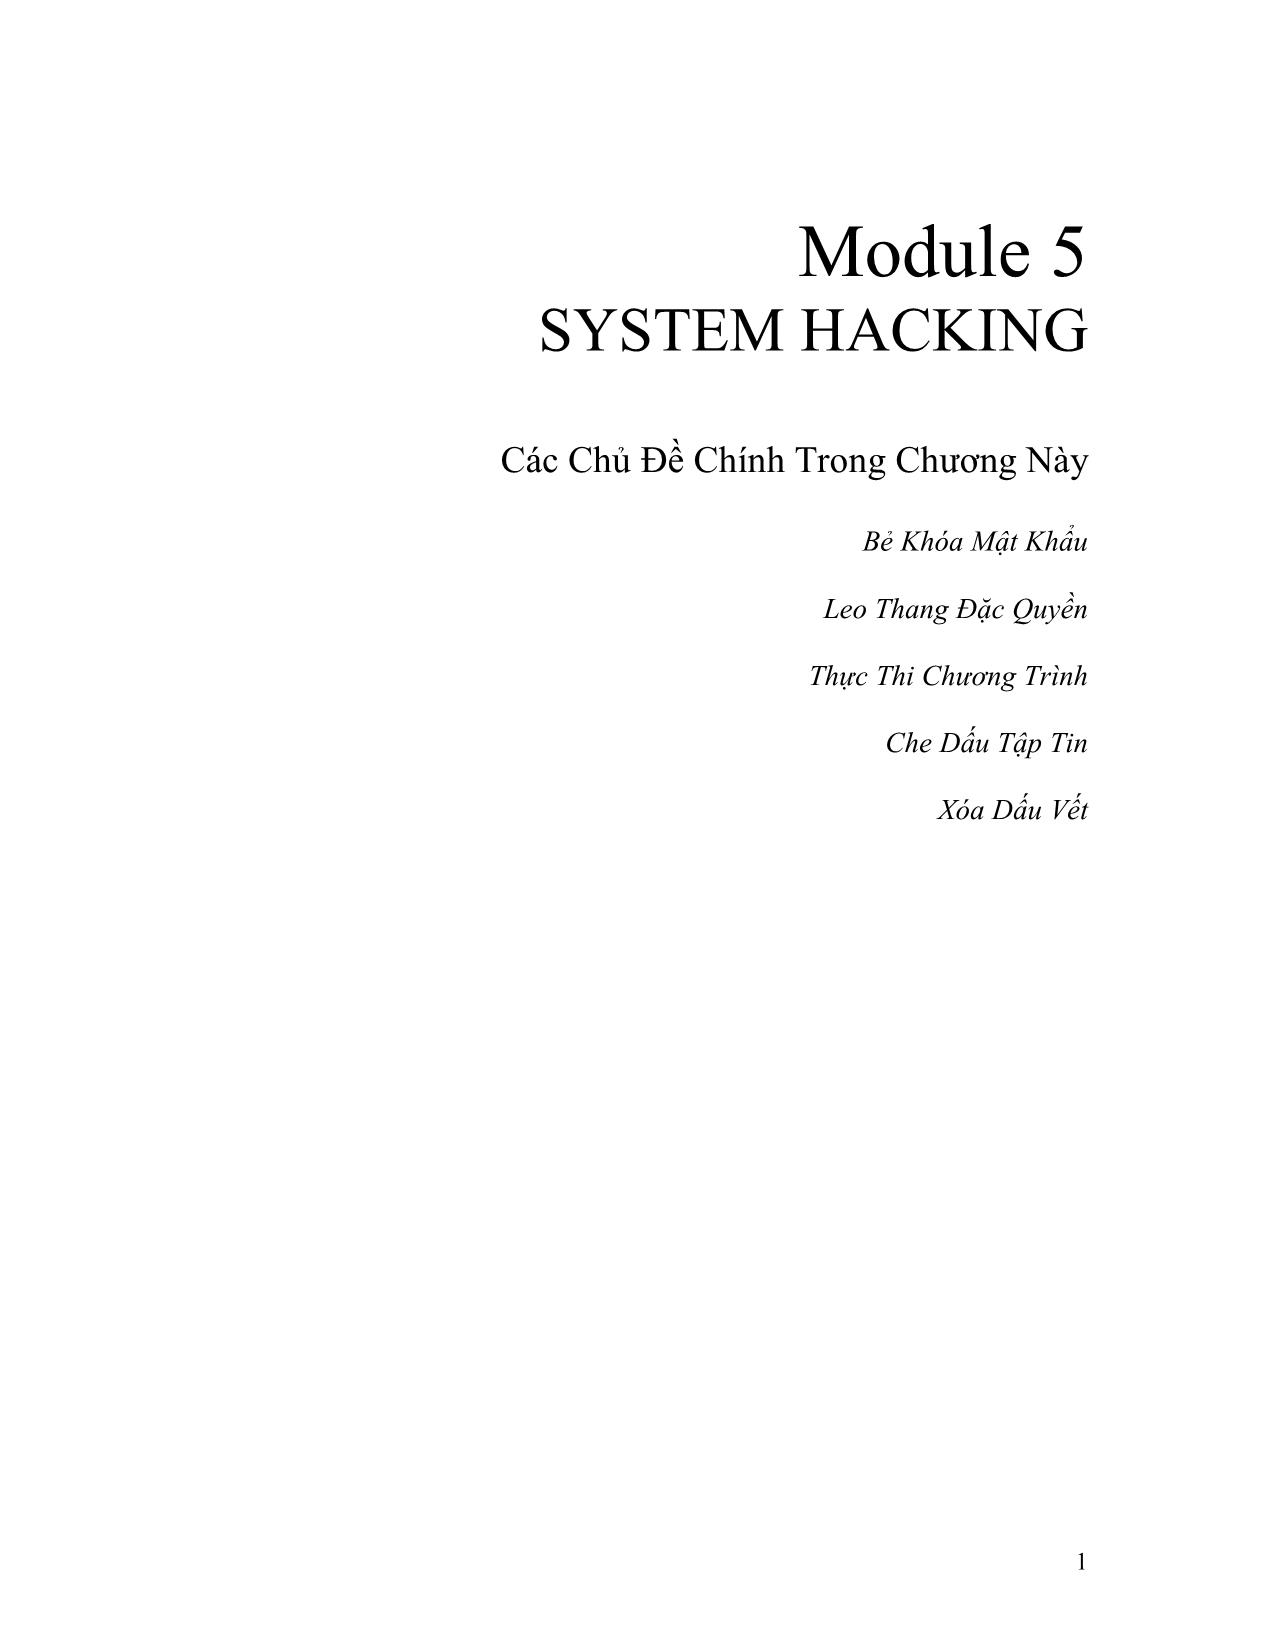 Module 5: System Hacking trang 1